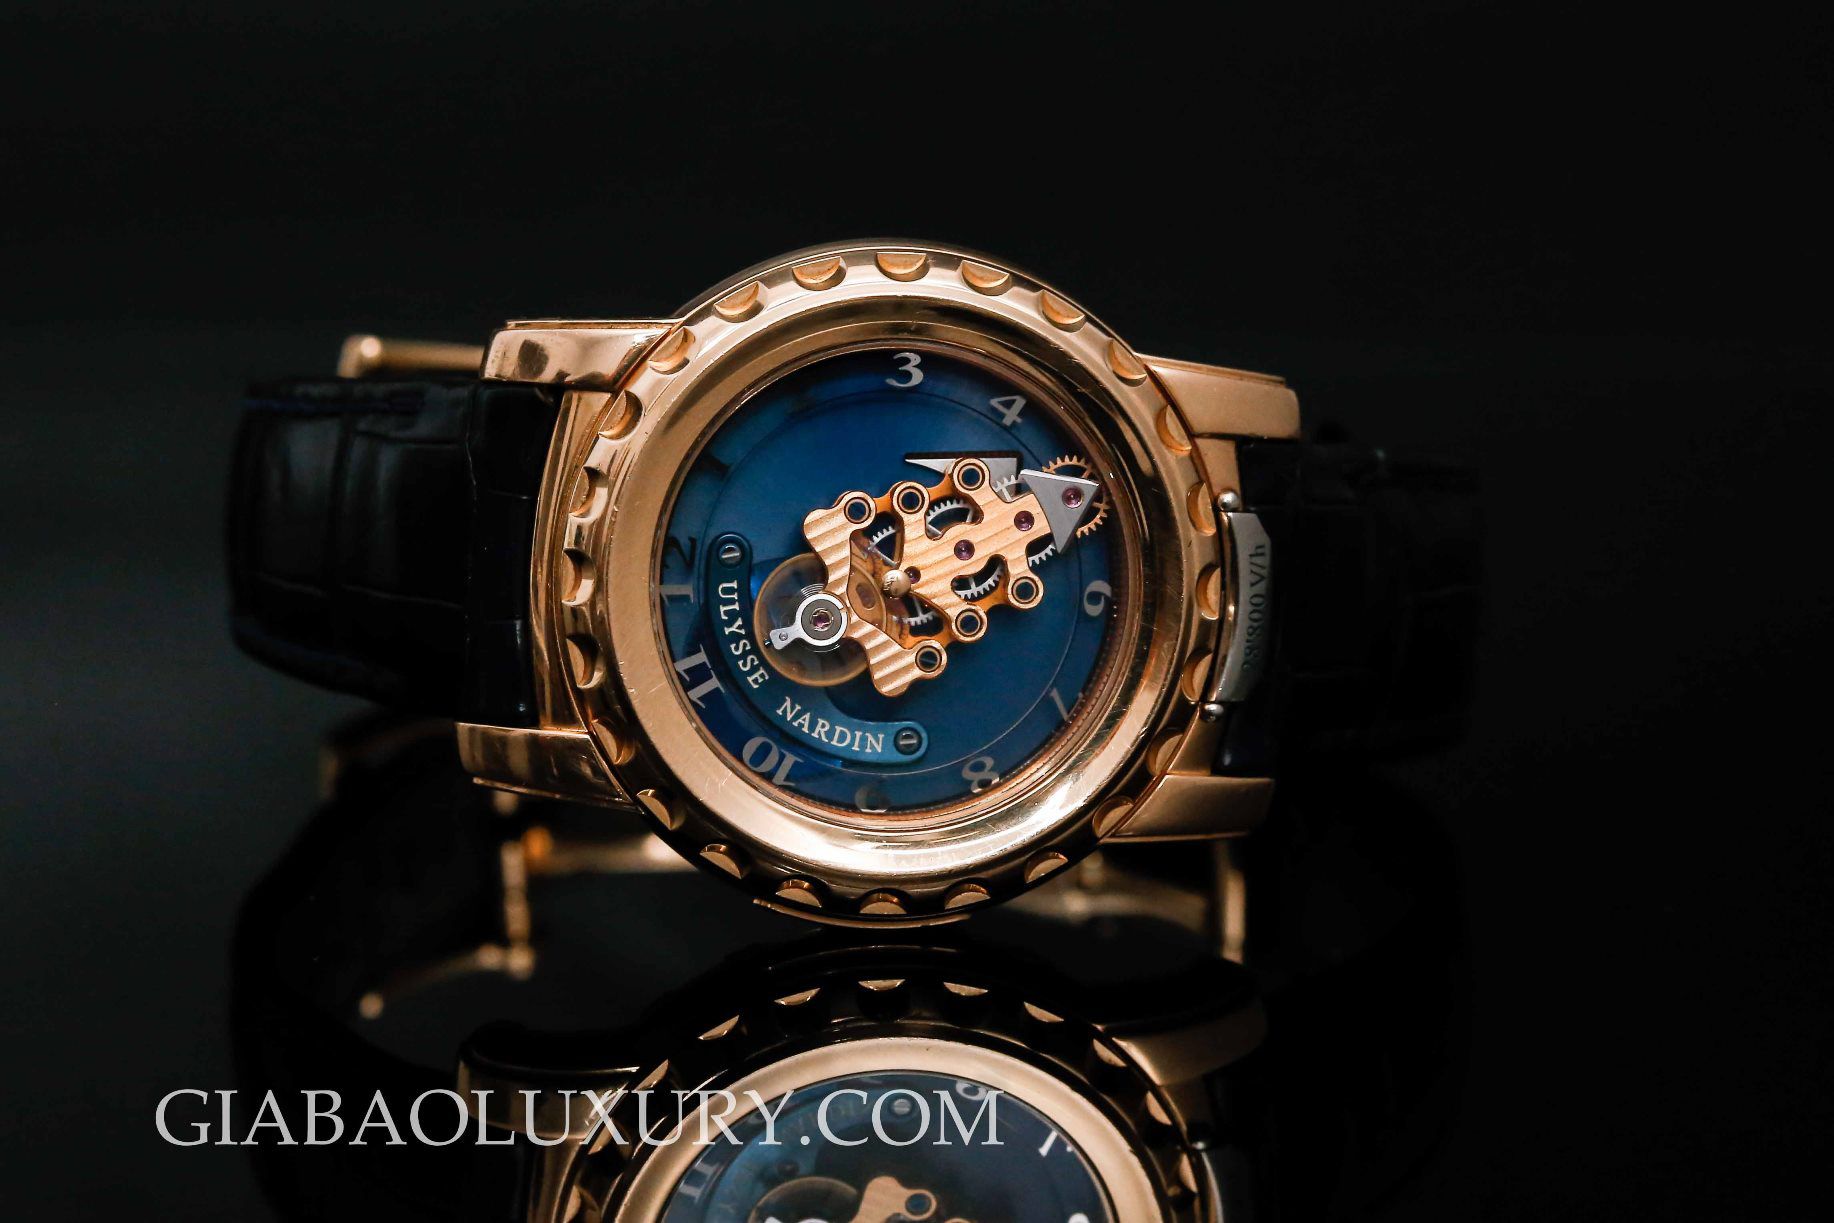 Thu mua đồng hồ Ulysse Nardin chính hãng tại Gia Bảo Luxury